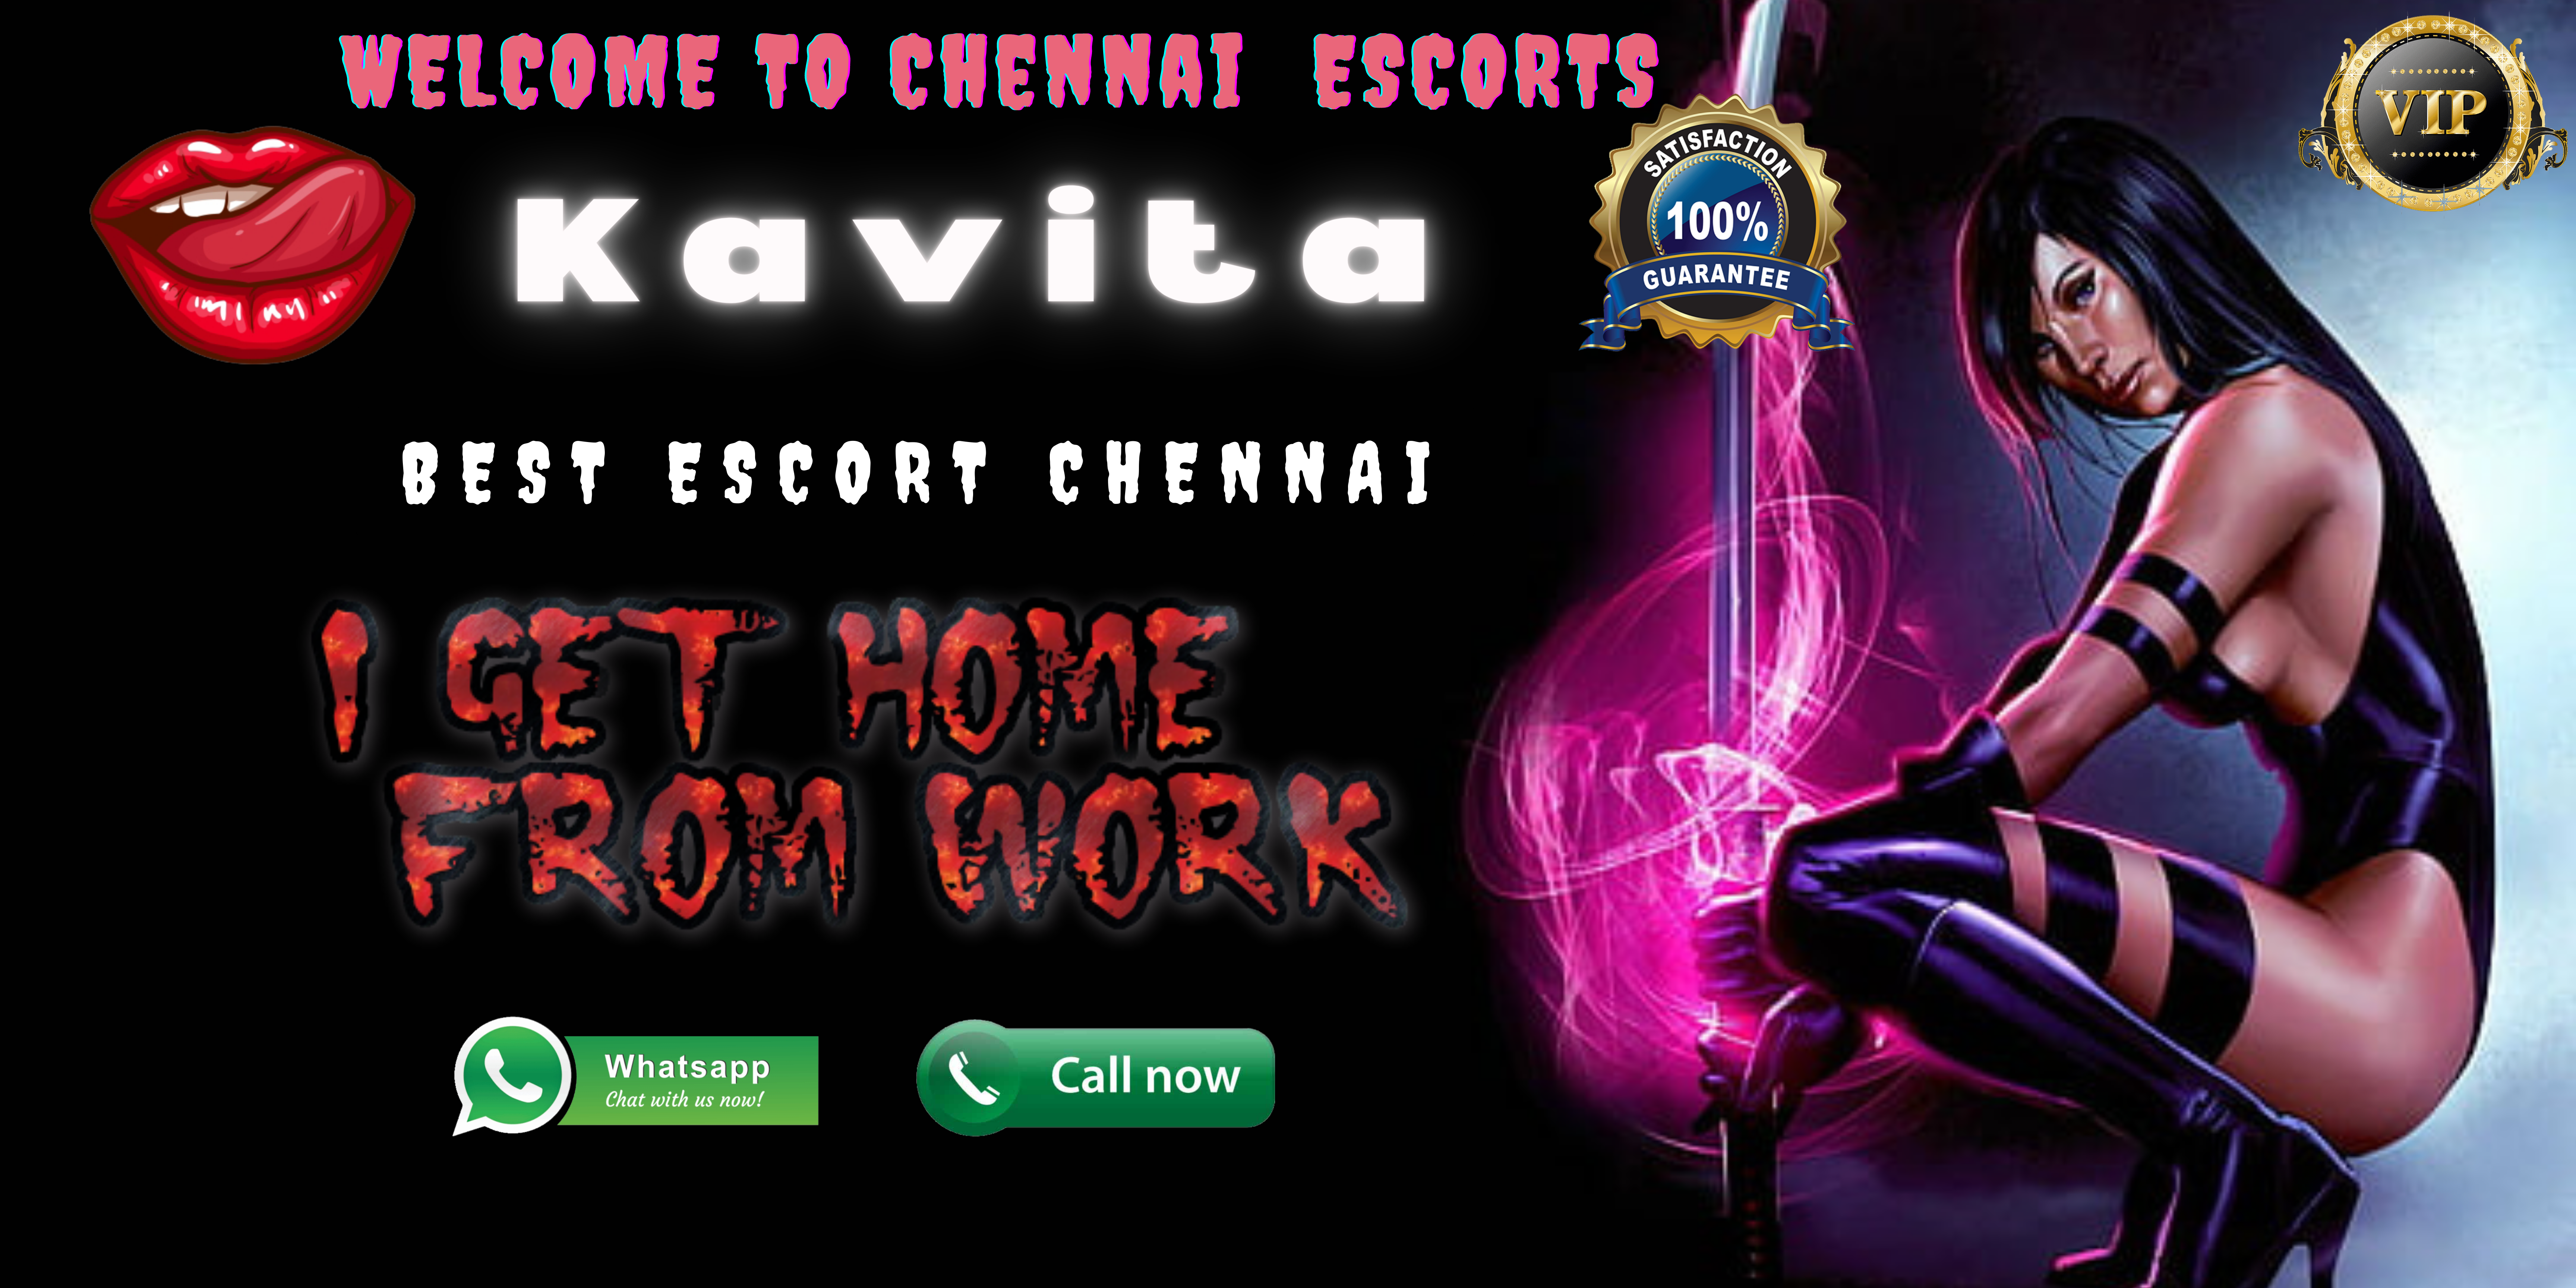 Chennai escort kavita